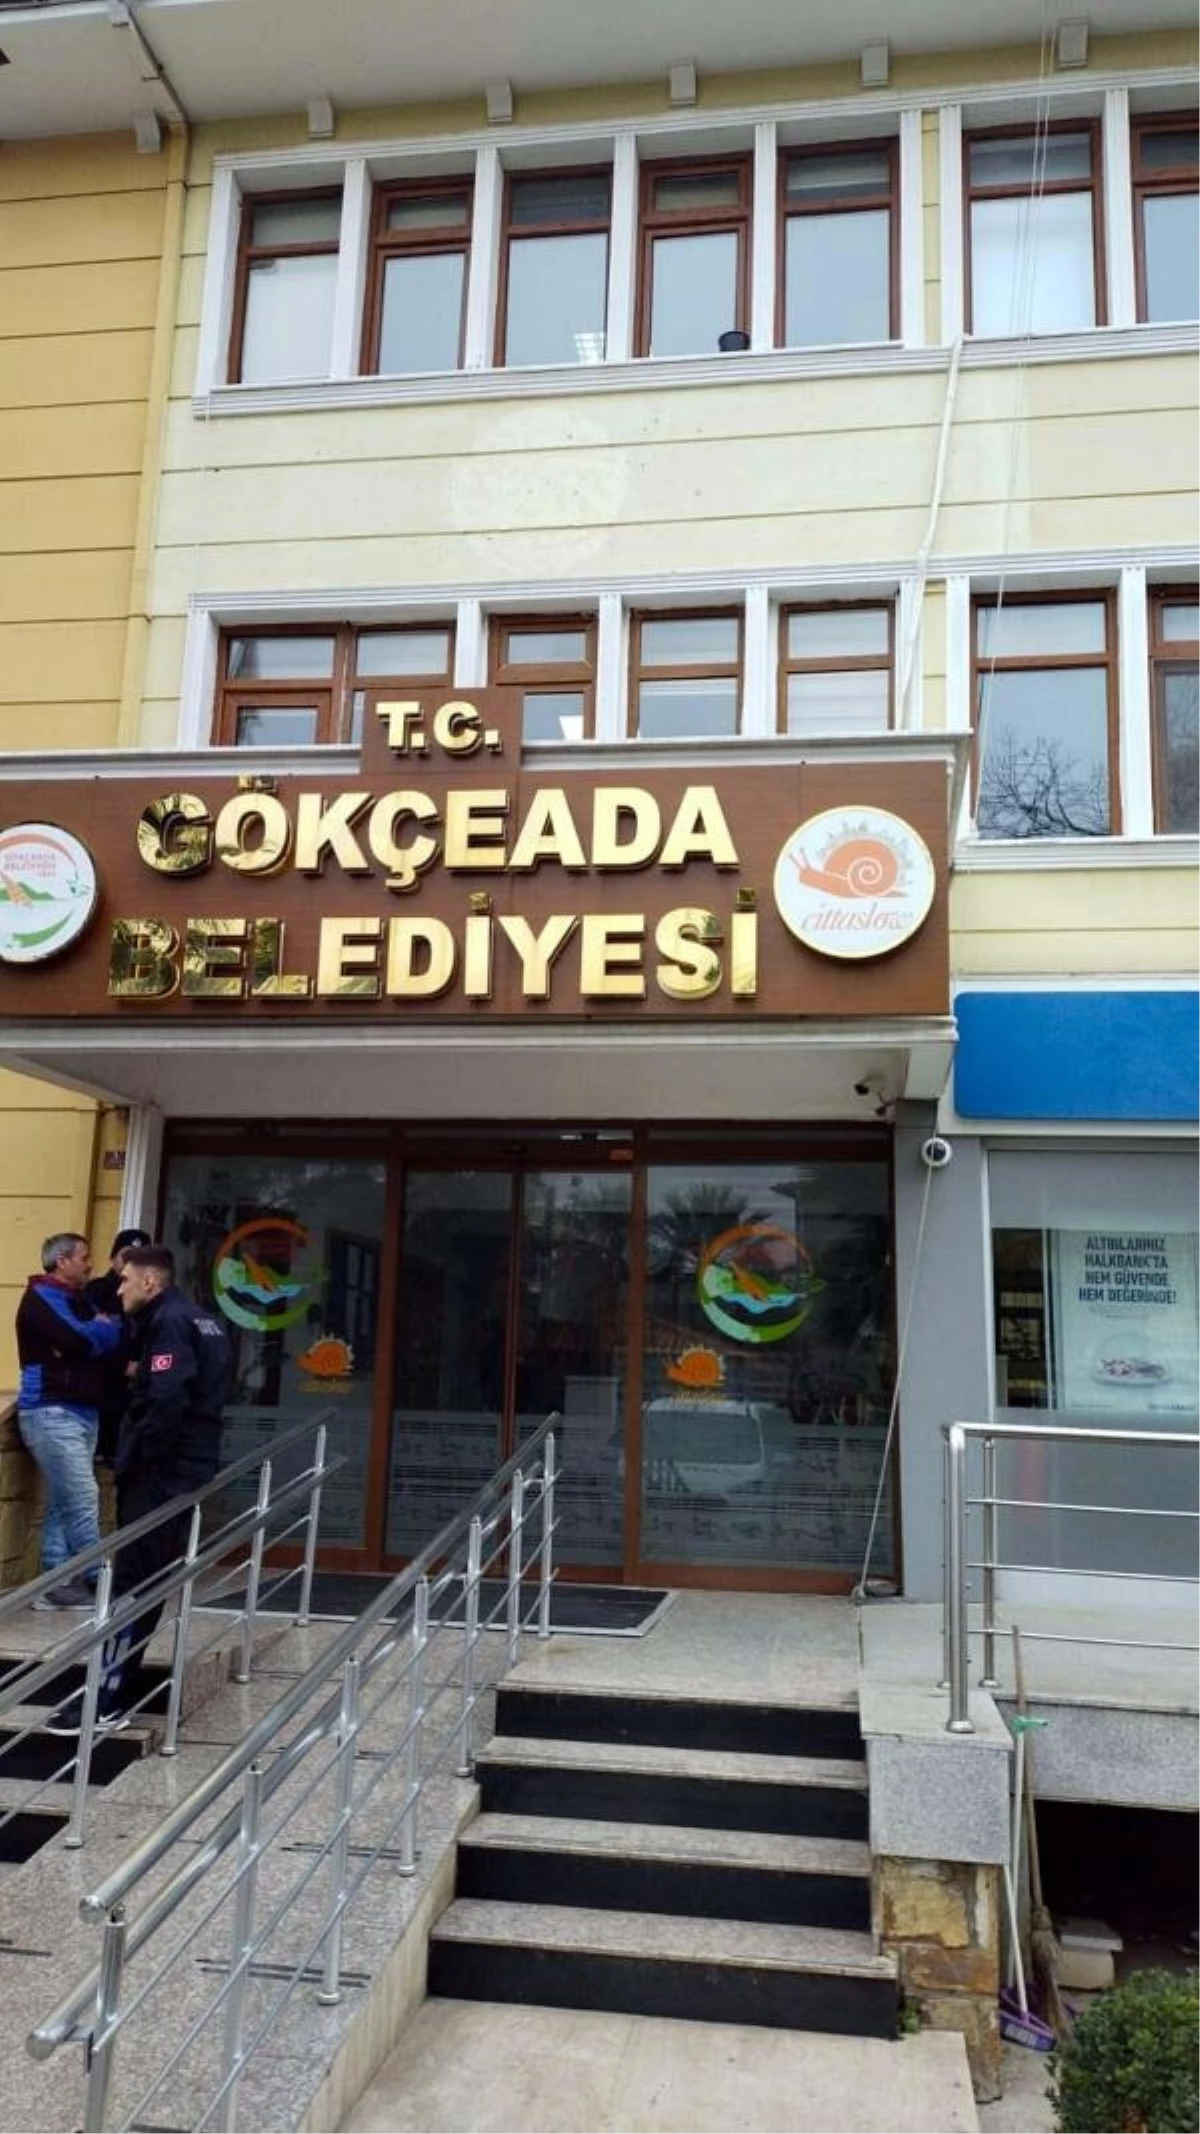 Gökçeada Belediye Başkanı Ünal Çetin, suçlamaları kabul etmediğini belirtti